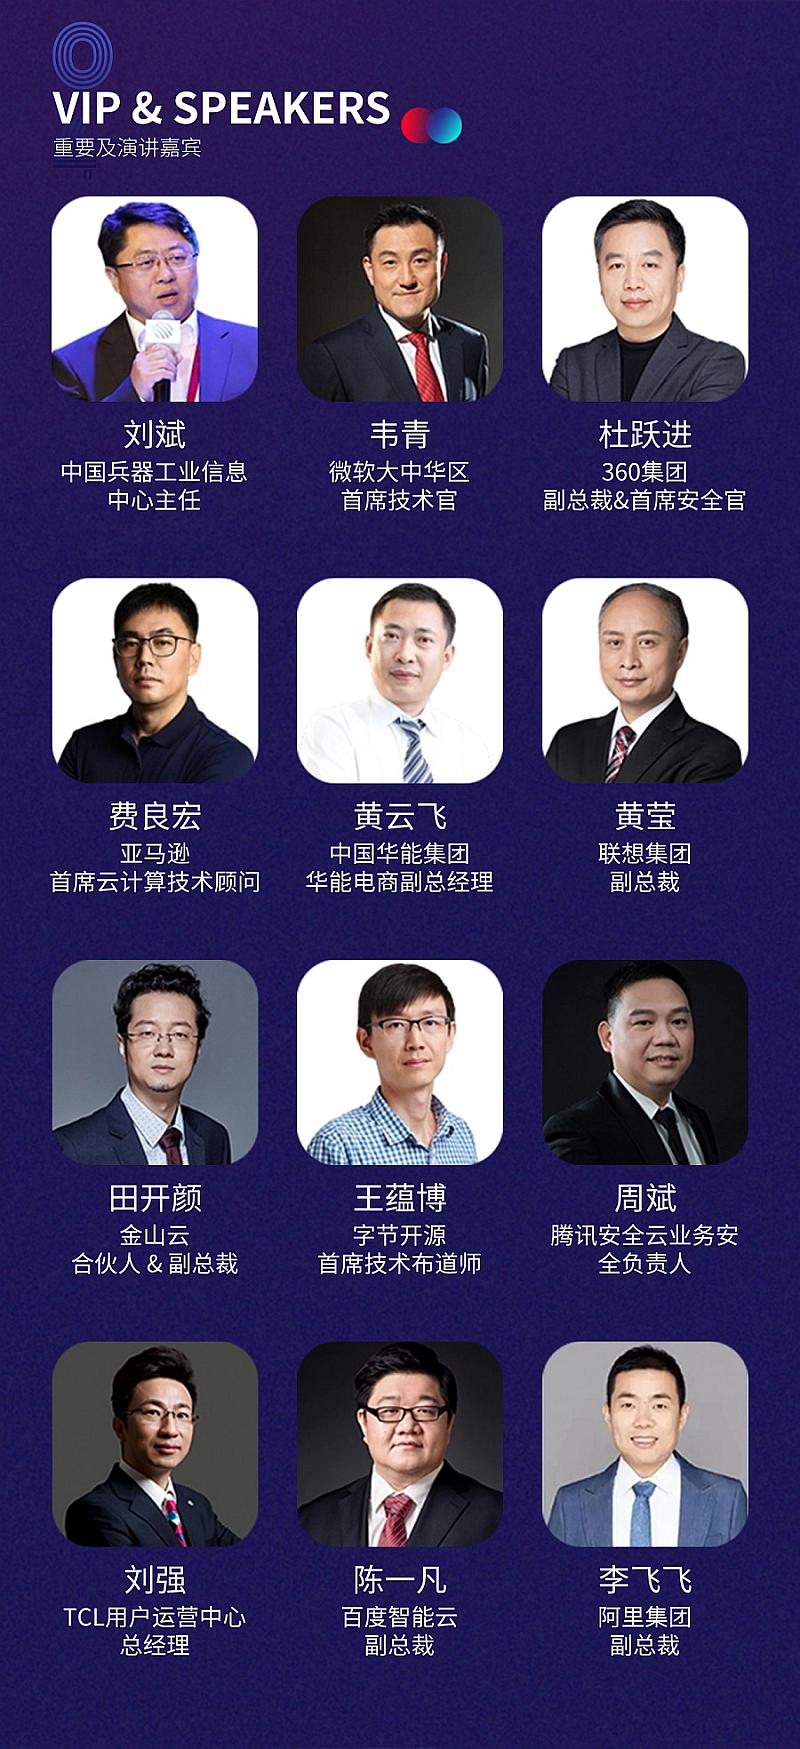 CDIC2024第二届中国数字产业大会